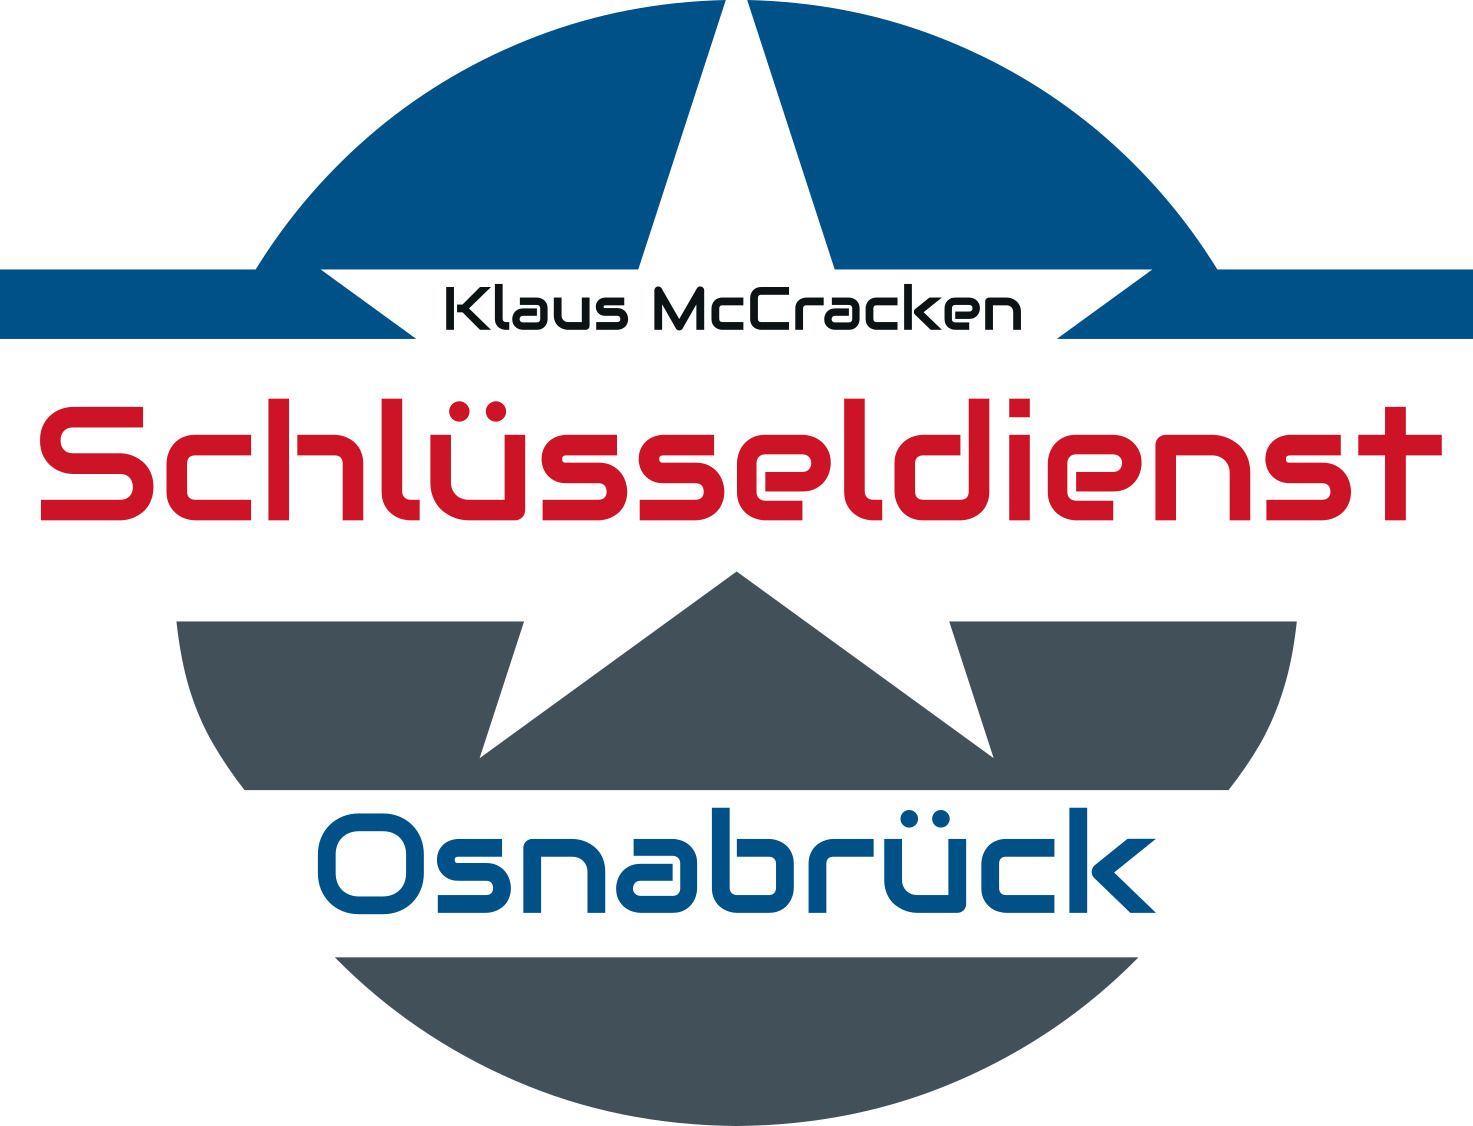 Schlüsseldienst Osnabrück Klaus McCracken